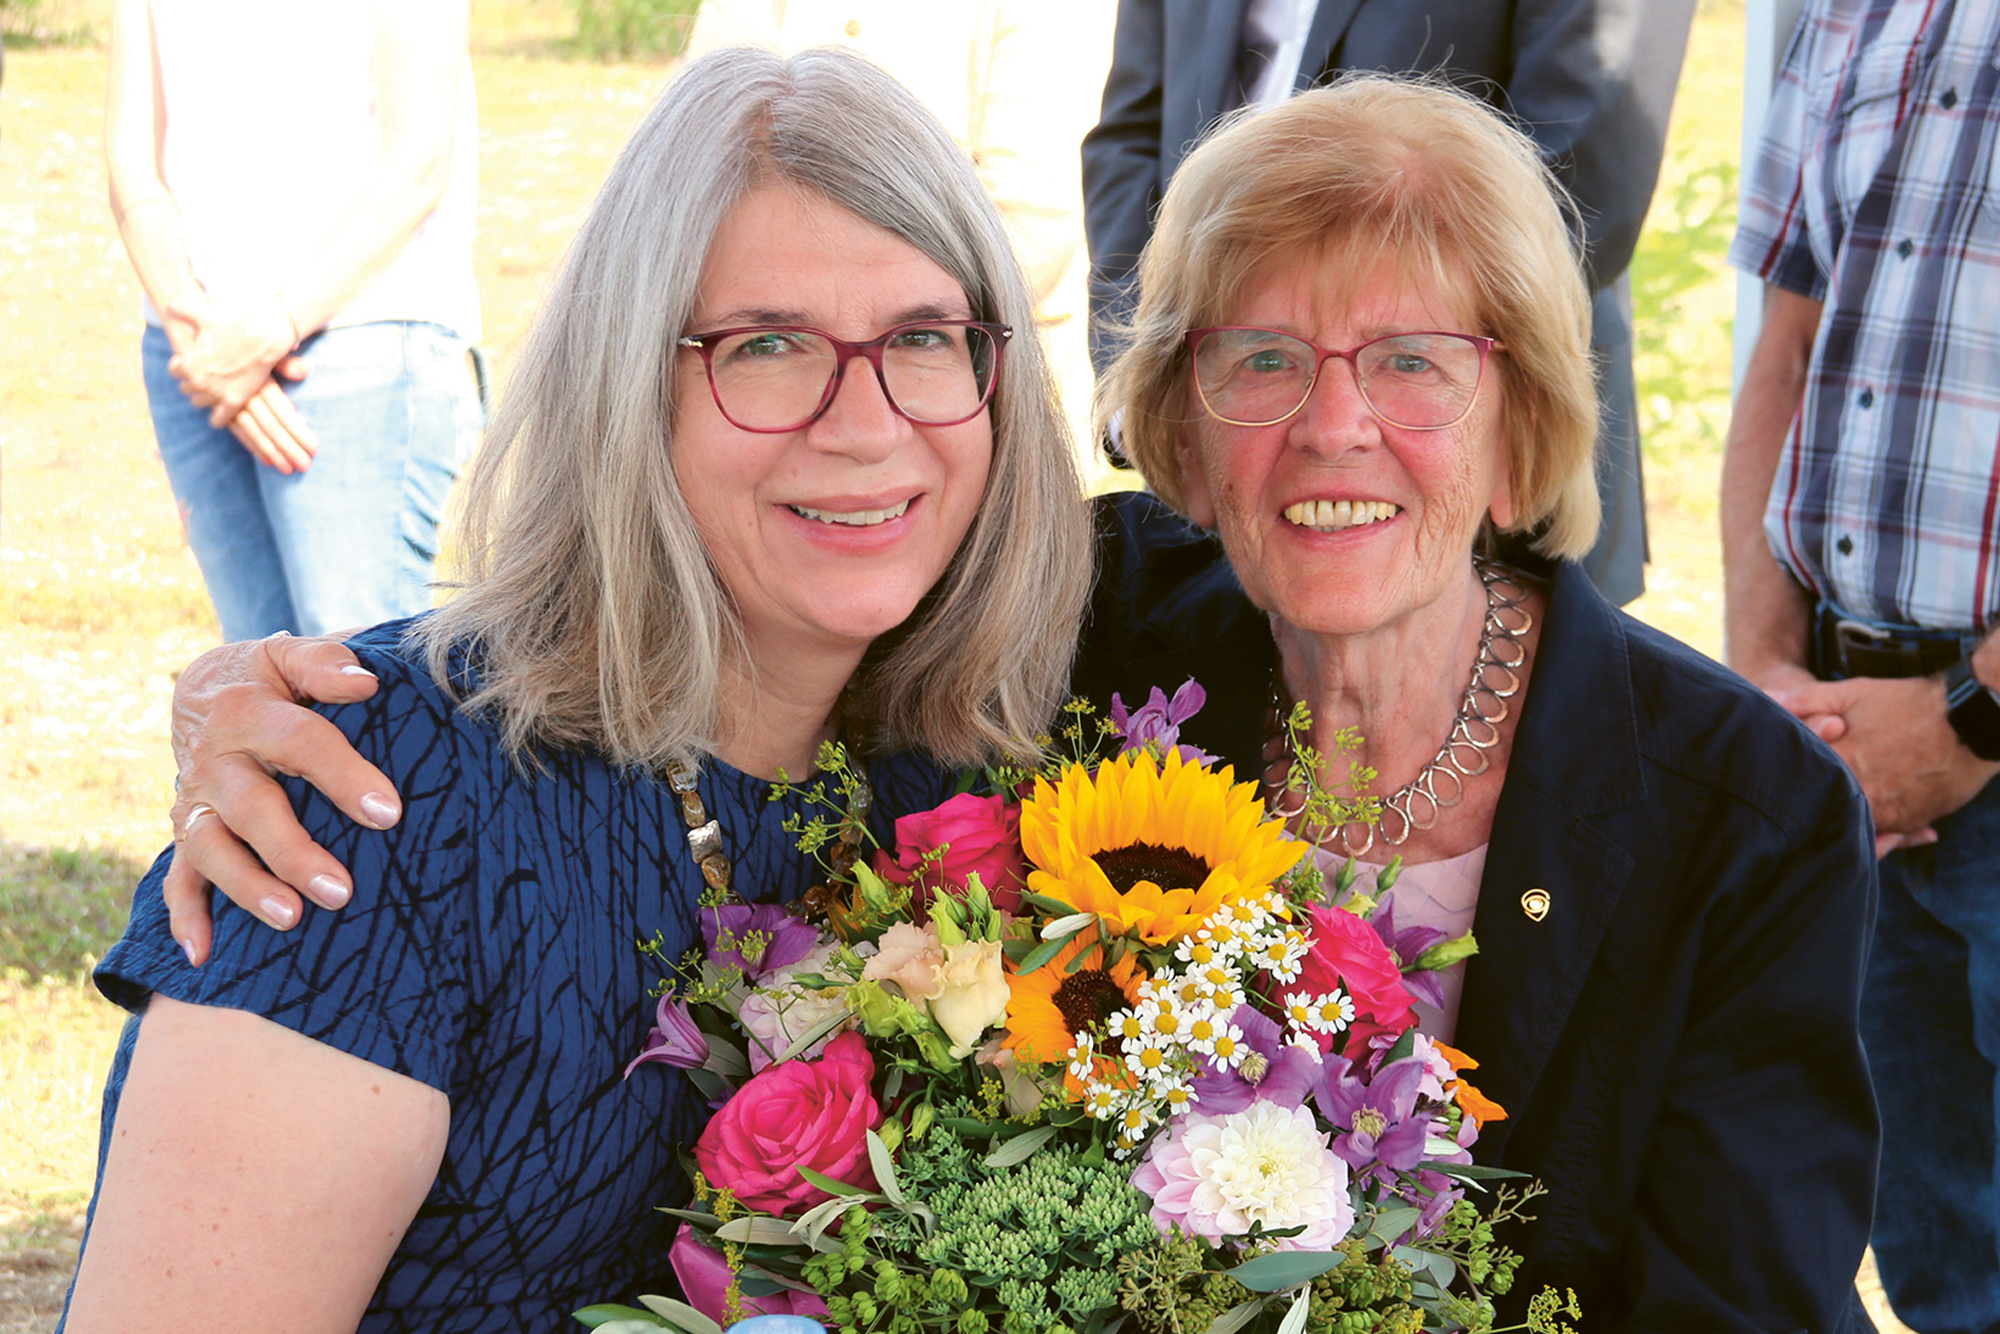 Prof. Dr. Bettina Wagner und ihre Mutter Irene Wagner lachen in die Kamera und halten einen Blumenstrauß mit vielen bunten Blumen in den Händen.